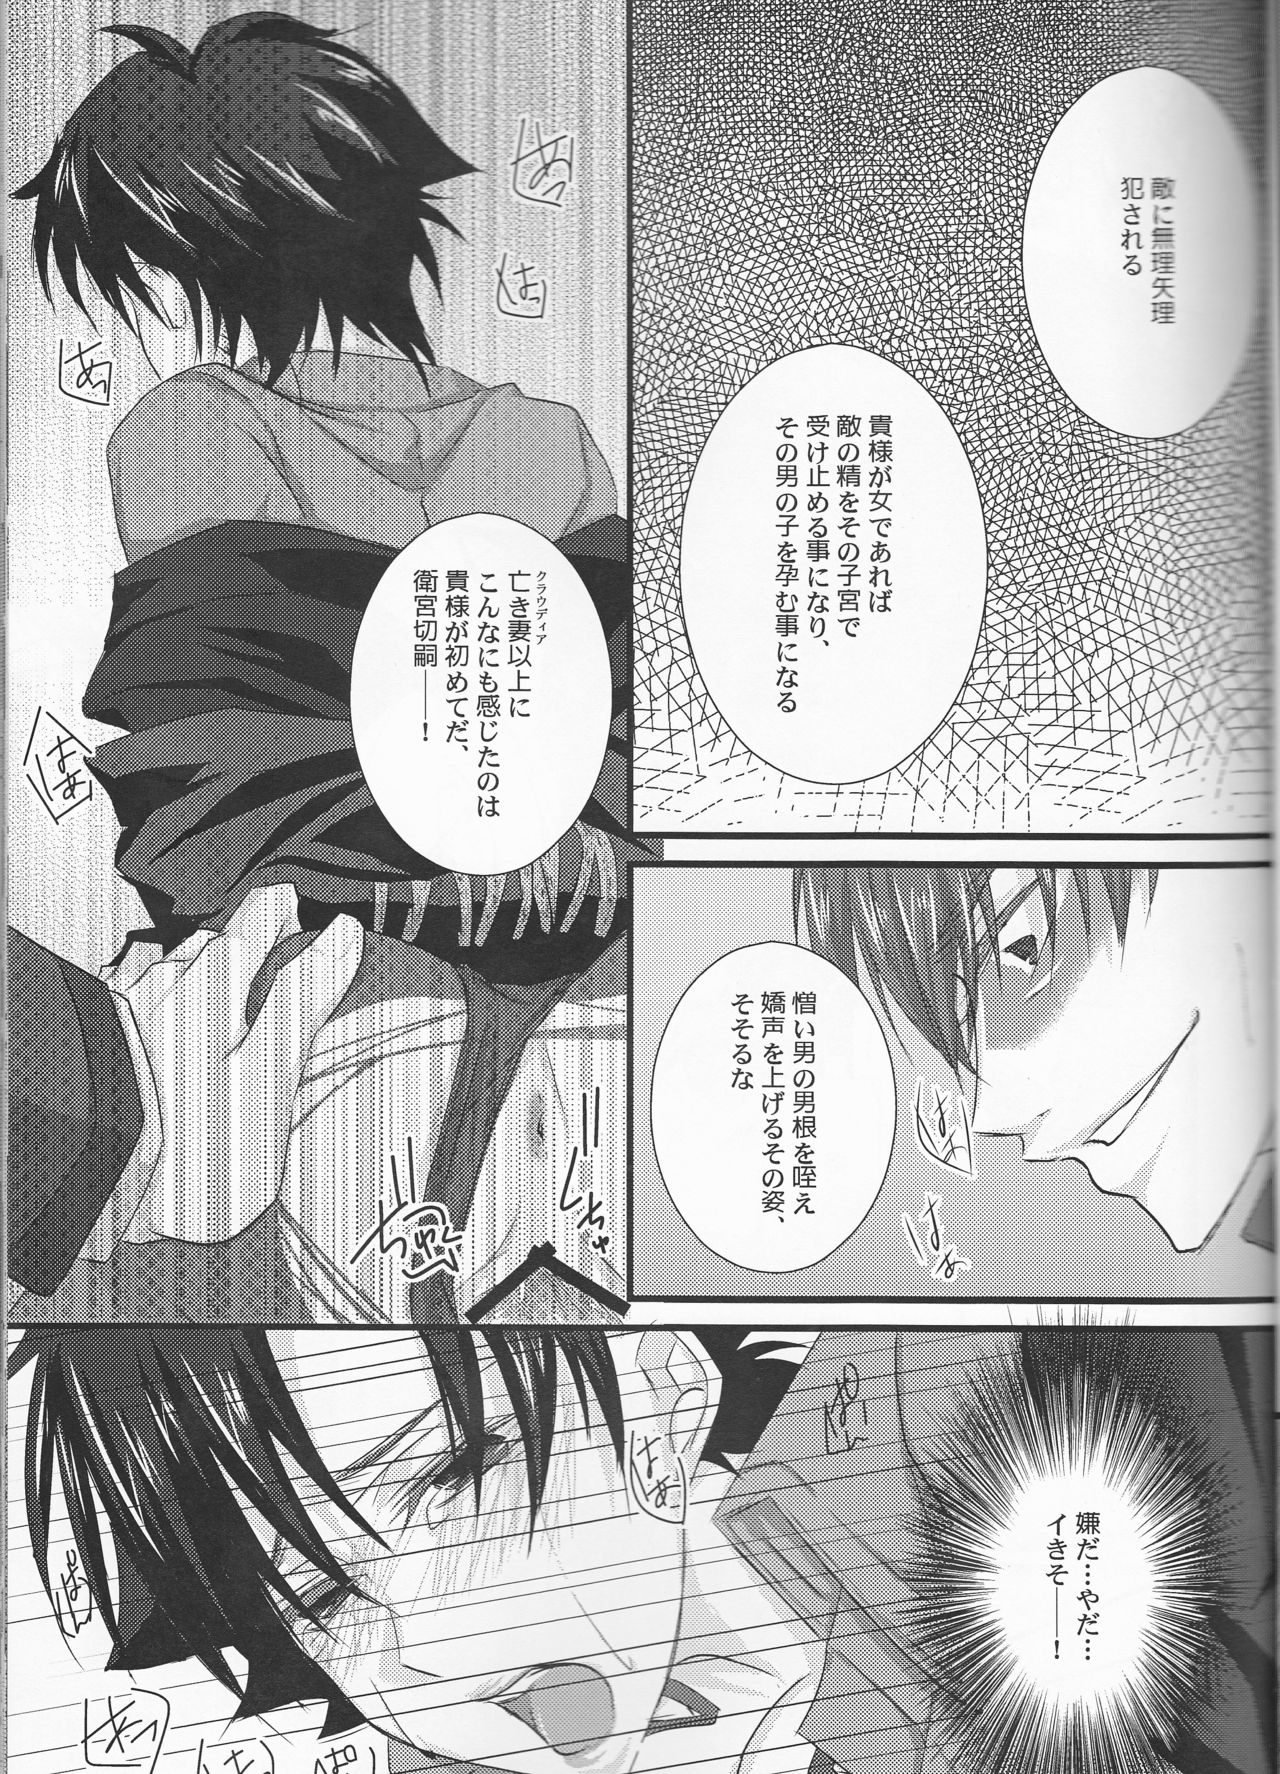 [R*style (Moko)] ♀Majutsushi-goroshi to Shinpu no Seihai Sensou (Fate/zero) [2013-01-26] [R*style (もこ)] ♀魔術師殺しと神父の性廃戦争 (Fate/zero) [2013年1月26日]